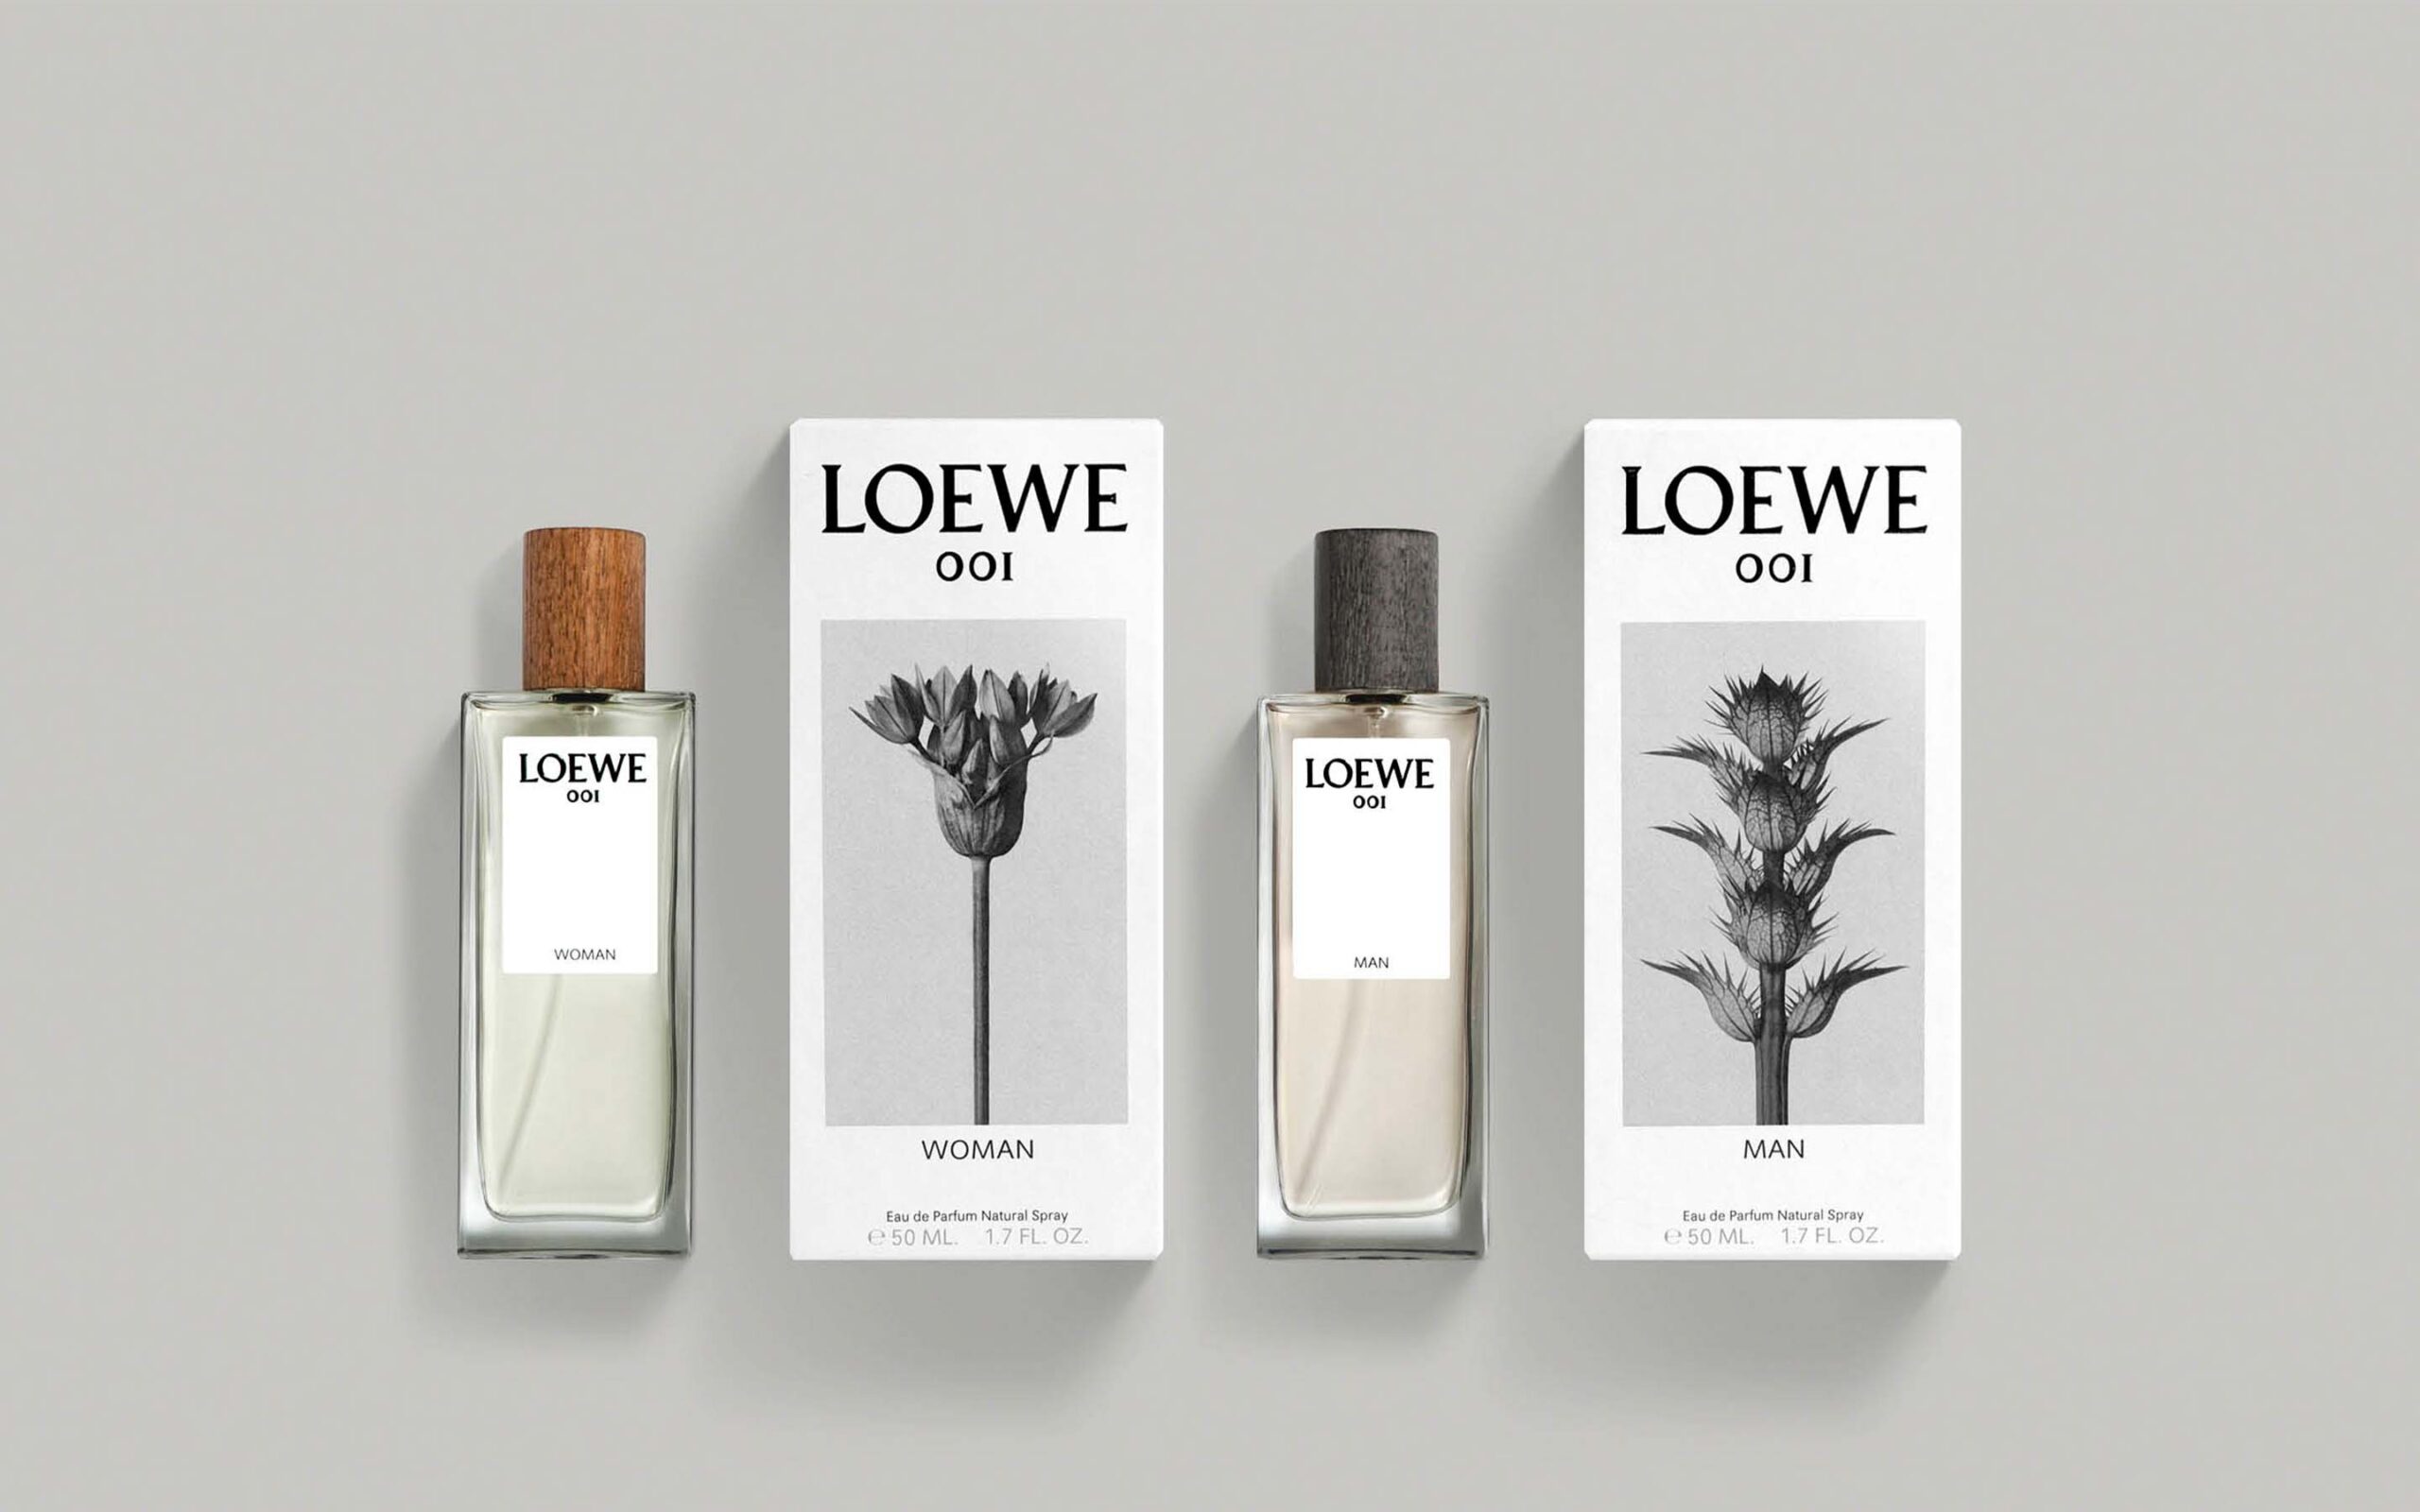 dja-loewe-2016-fragrance-001-packaging-03Desktop